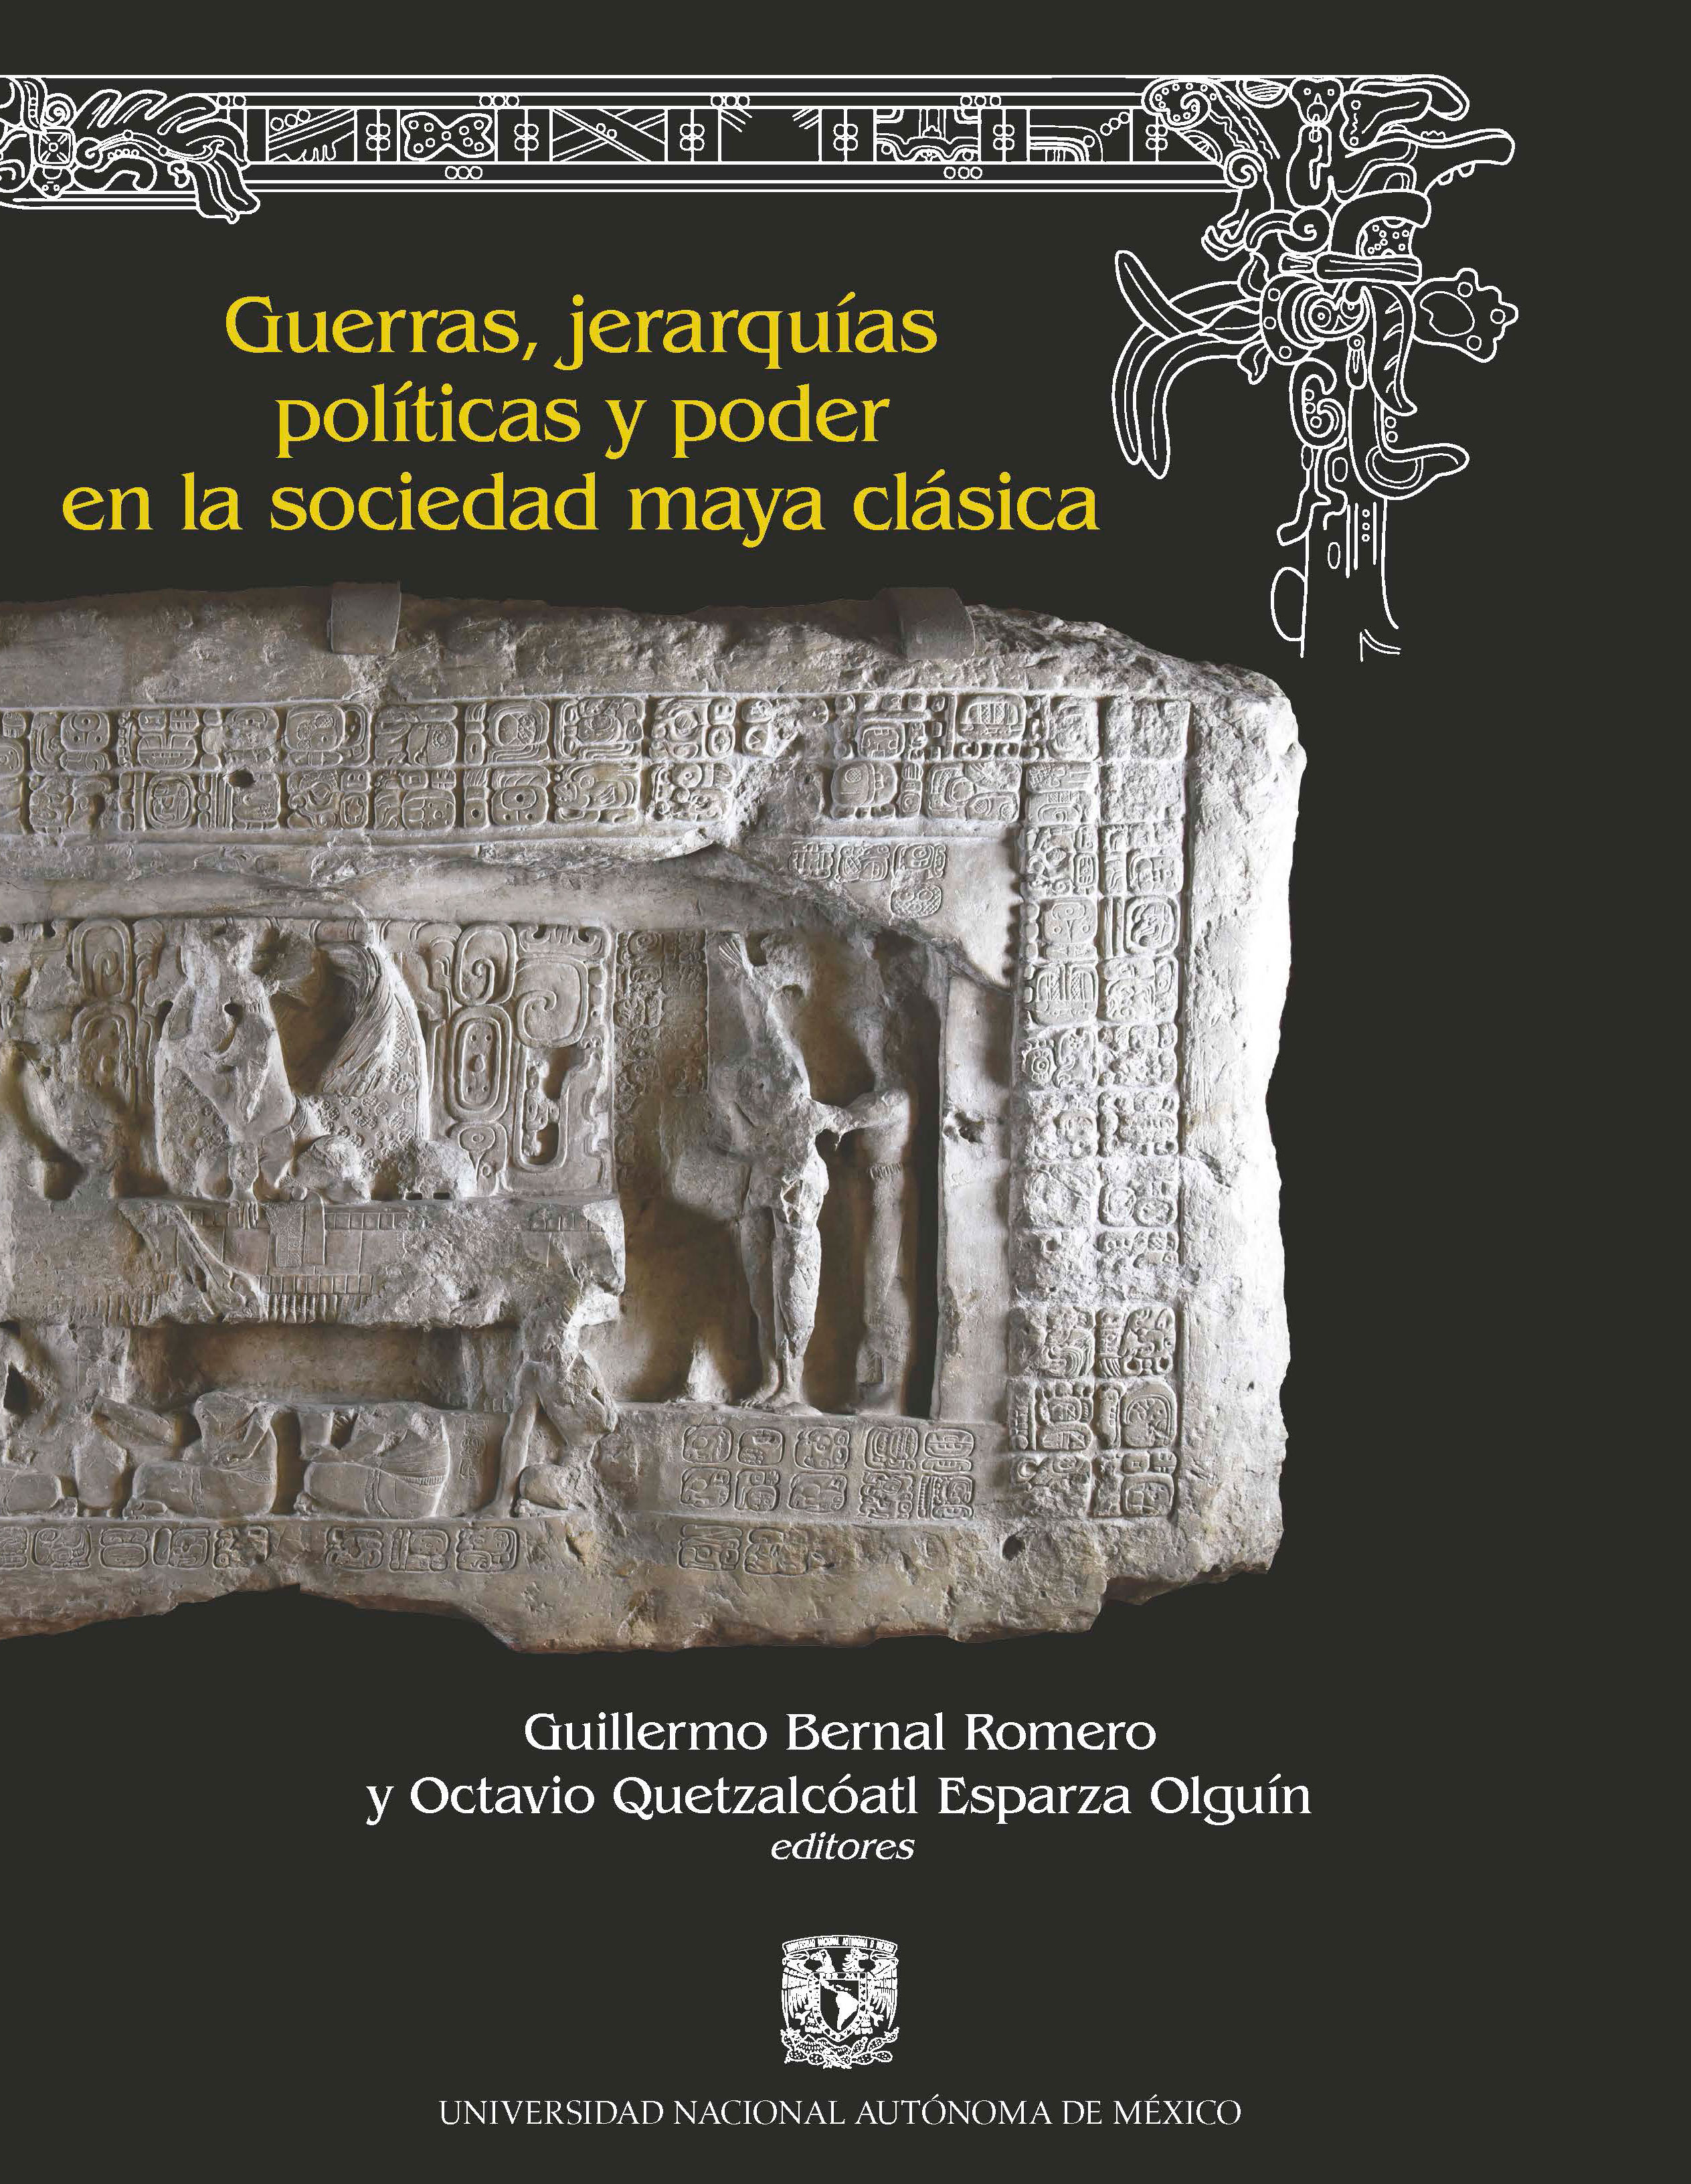 Guerras, jerarquias políticas y poder en la sociedad maya clásica